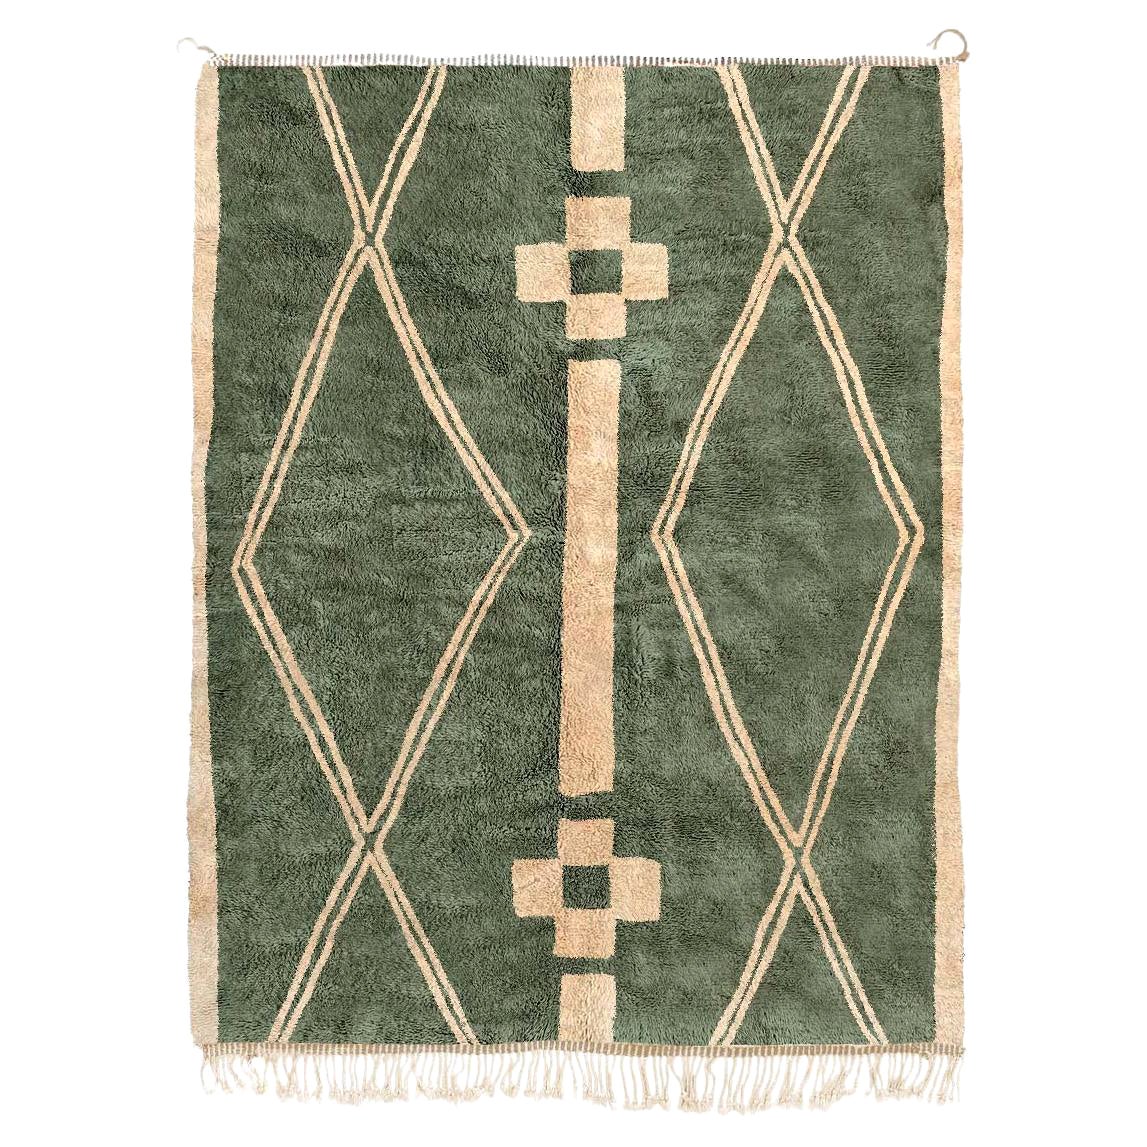 Tapis marocain Beni Mrirt 9'x12', motif tribal tapis de couleur vert shag, fait sur mesure en vente